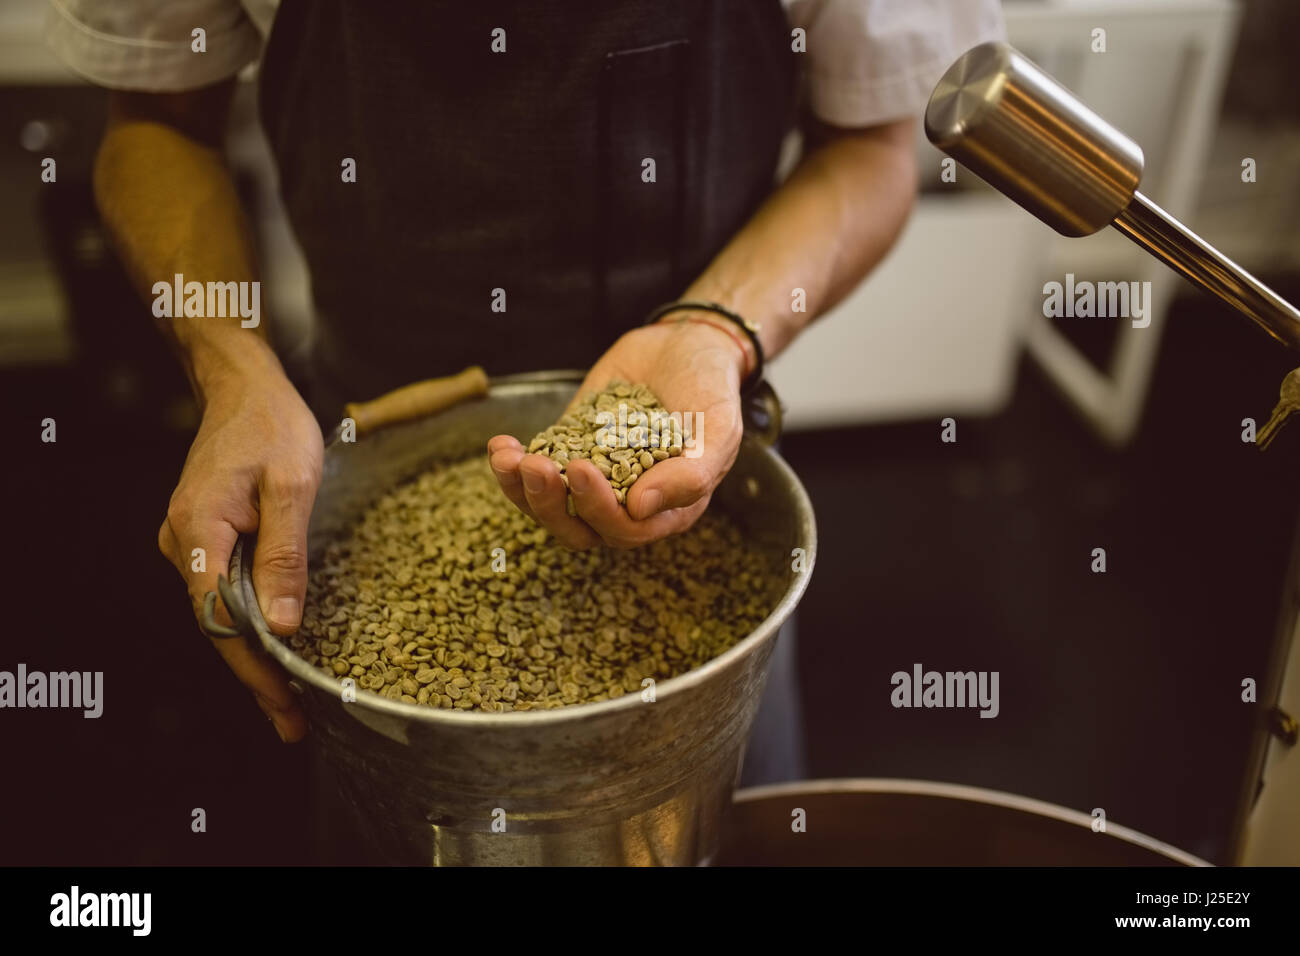 Café Industrial Maquinaria para moler los granos de café tostado Fotografía  de stock - Alamy